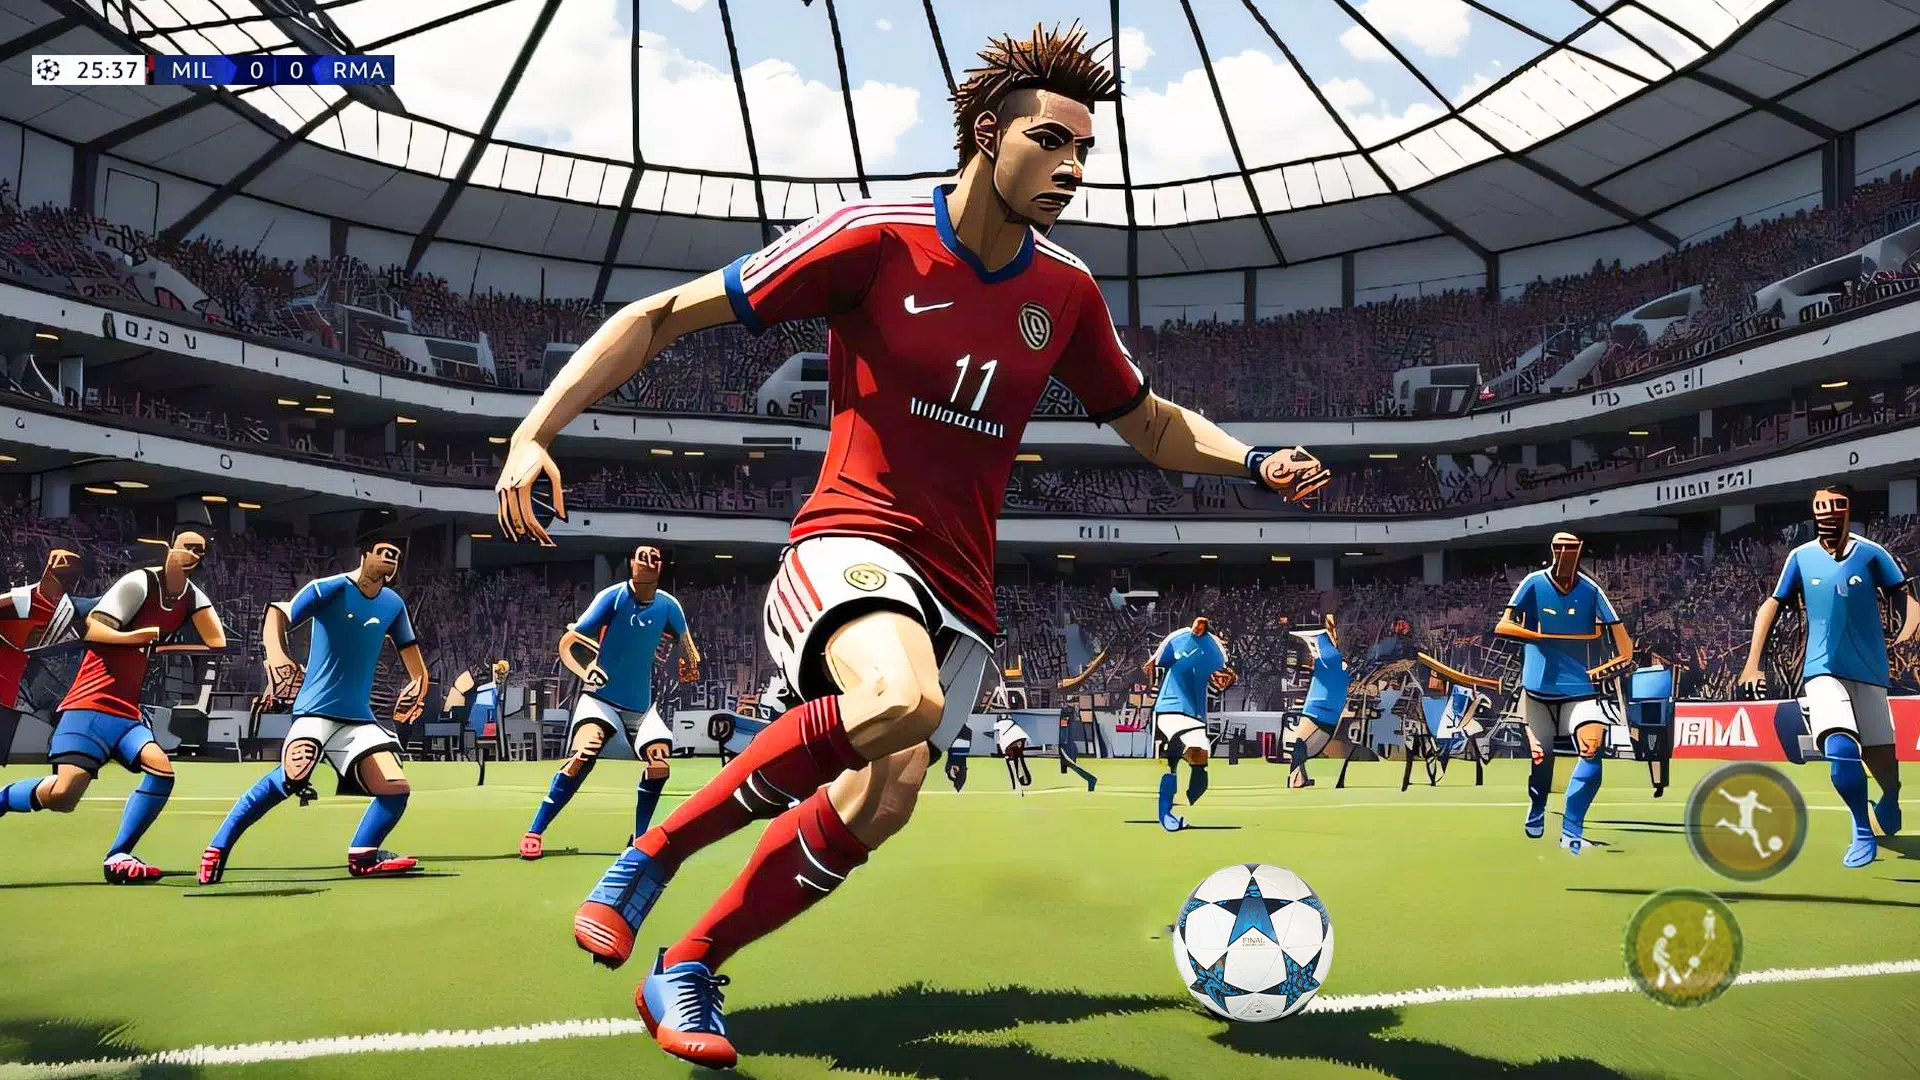 Descargar Jogos de futebol off-line 1.9 para Android gratis - Uoldown